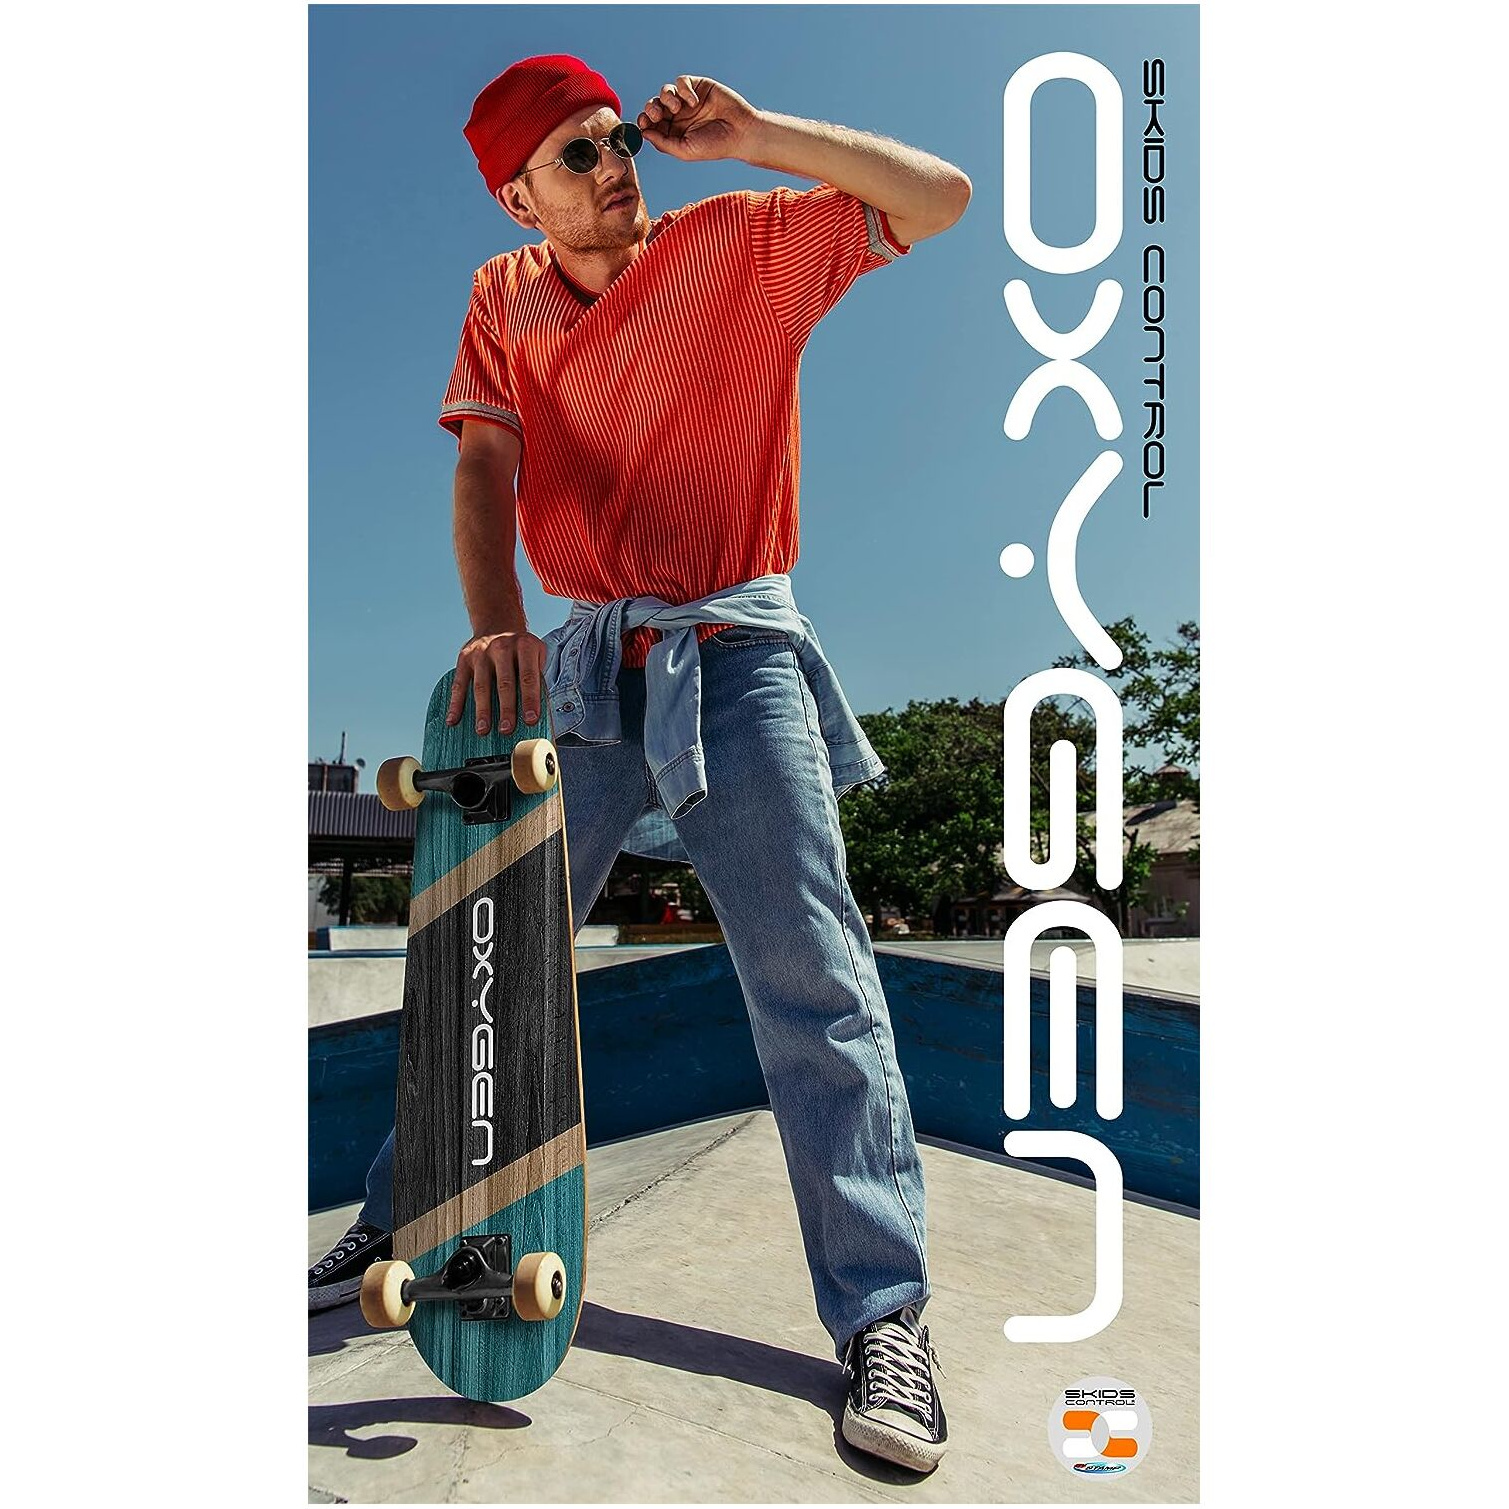 Cruiser Skateboard 27,5 X 8 Polegadas Skids Control | Sport Zone MKP